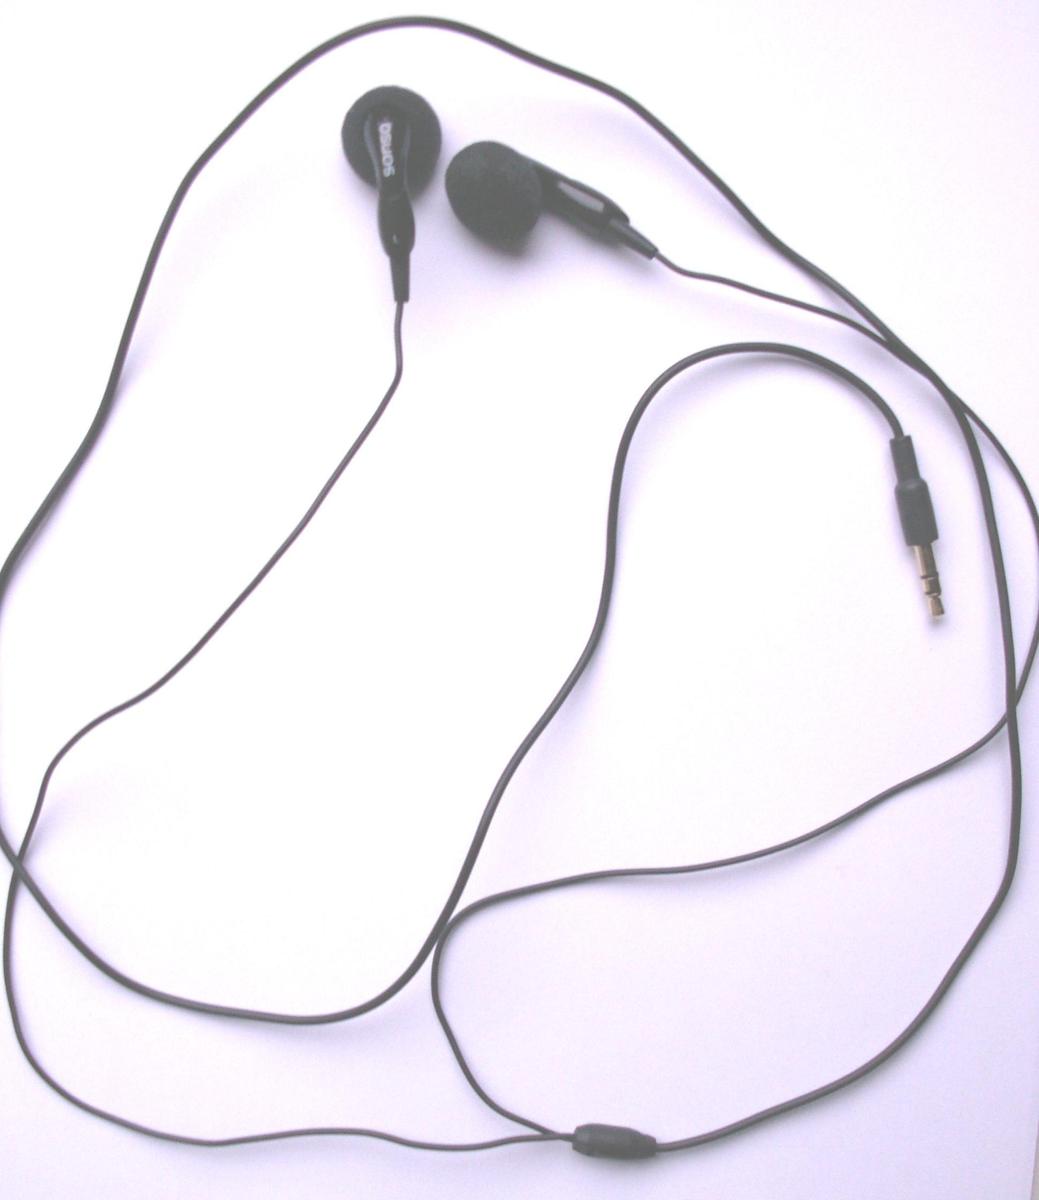 Out ear earphones